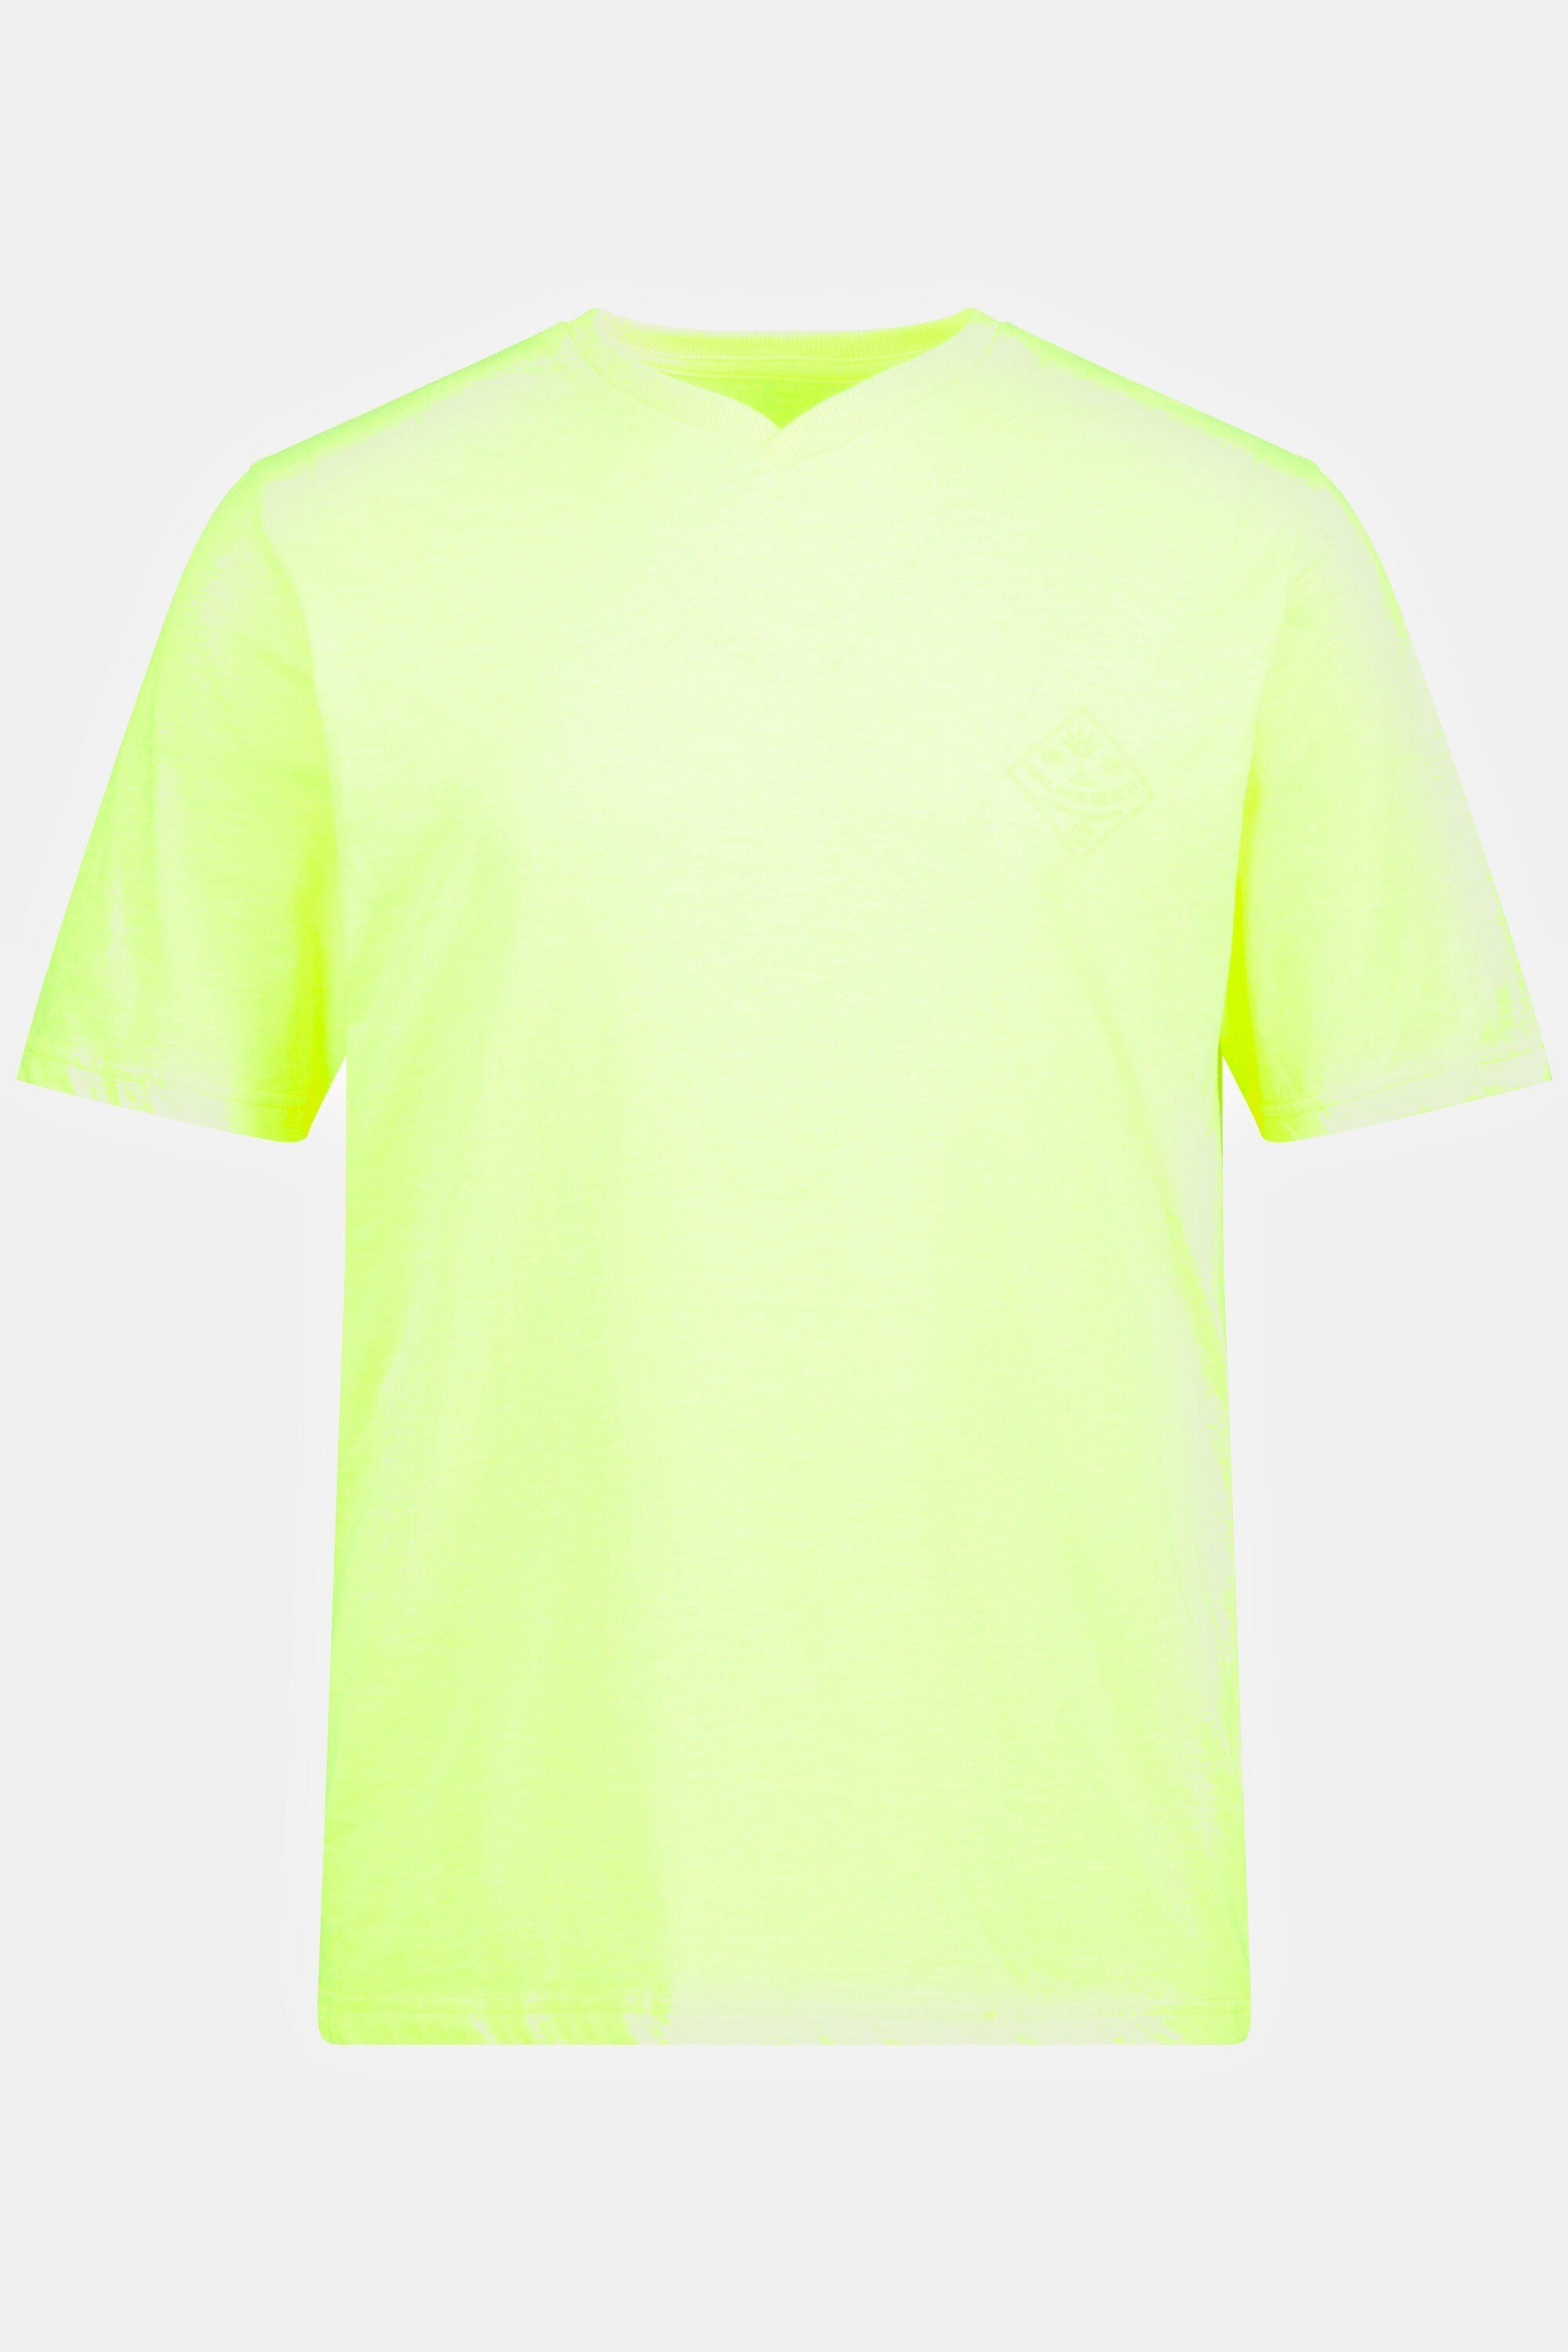 JP1880 T-Shirt T-Shirt Halbarm gelb neon V-Ausschnitt